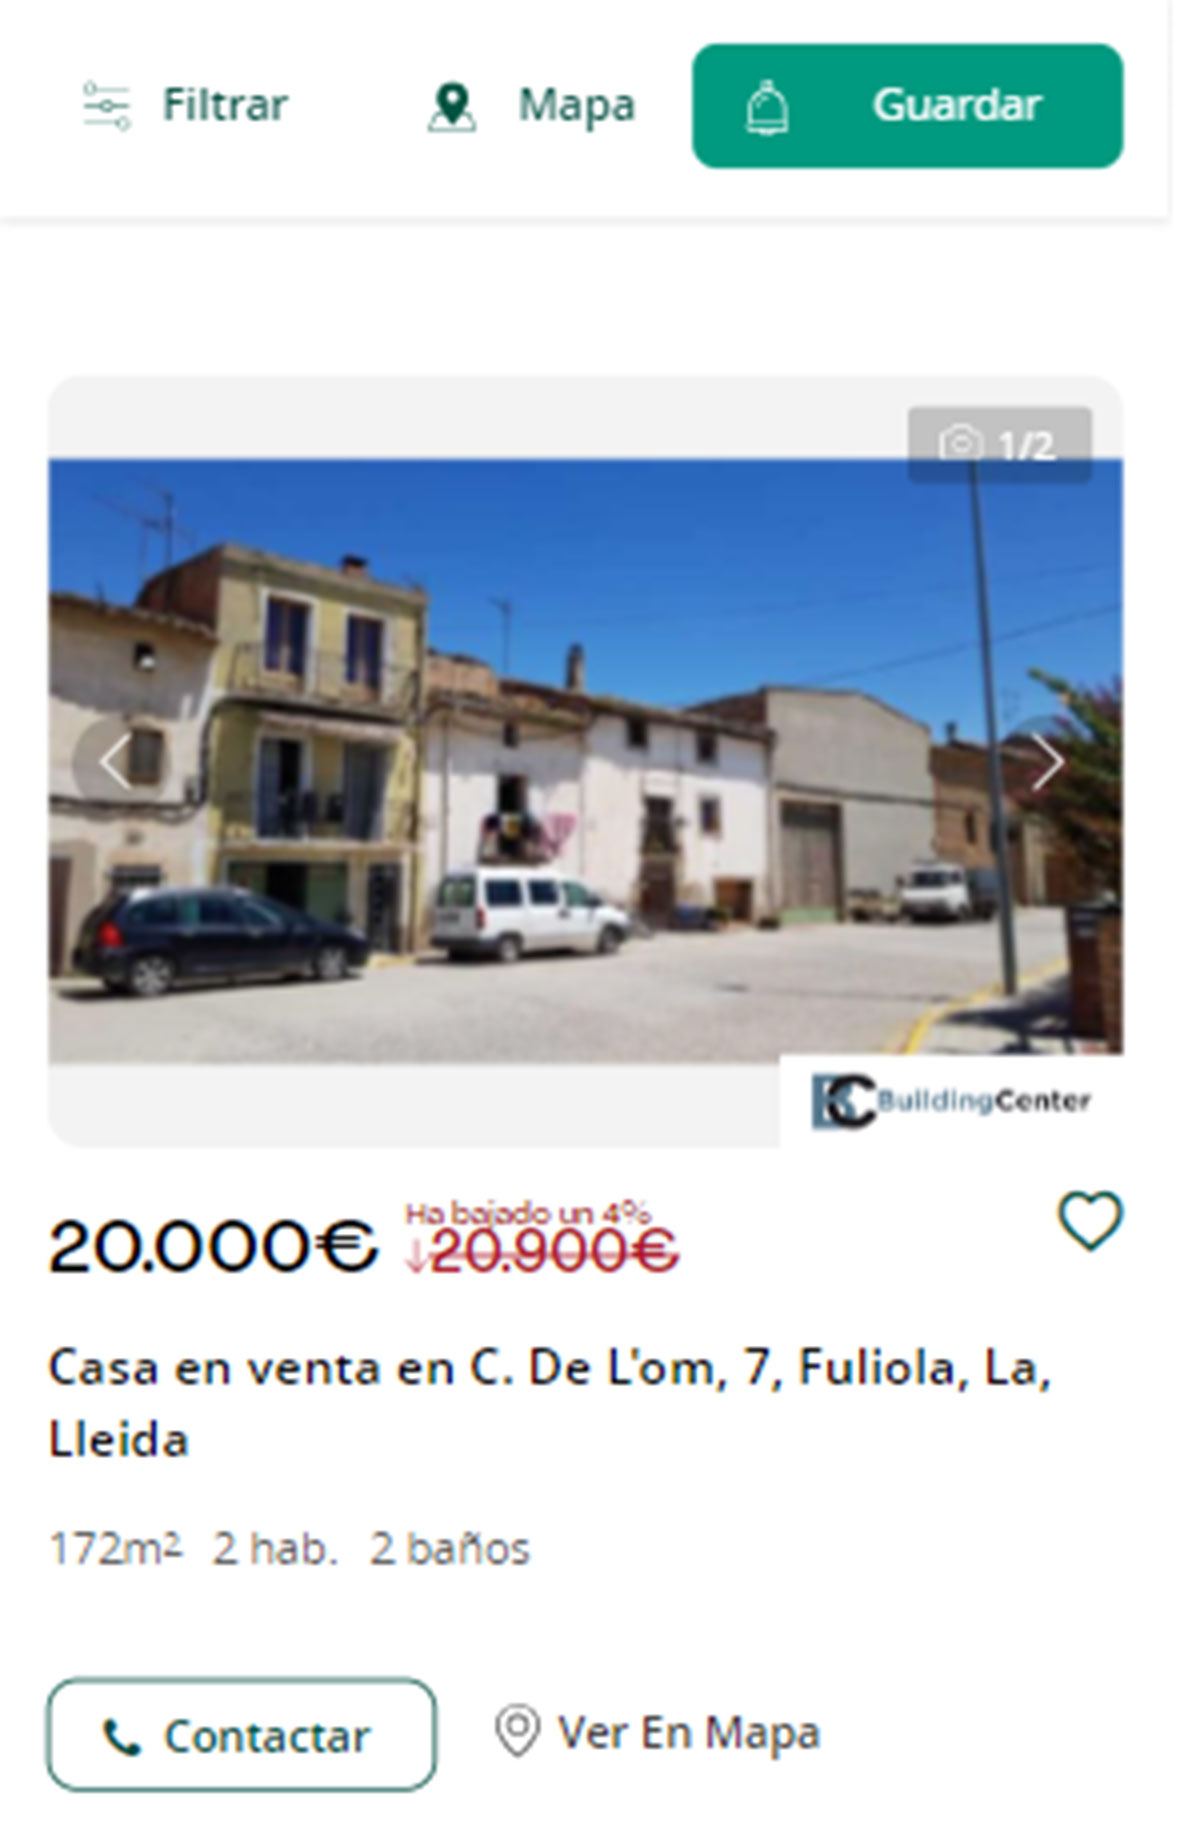 Piso en Lleida por 20.000 euros